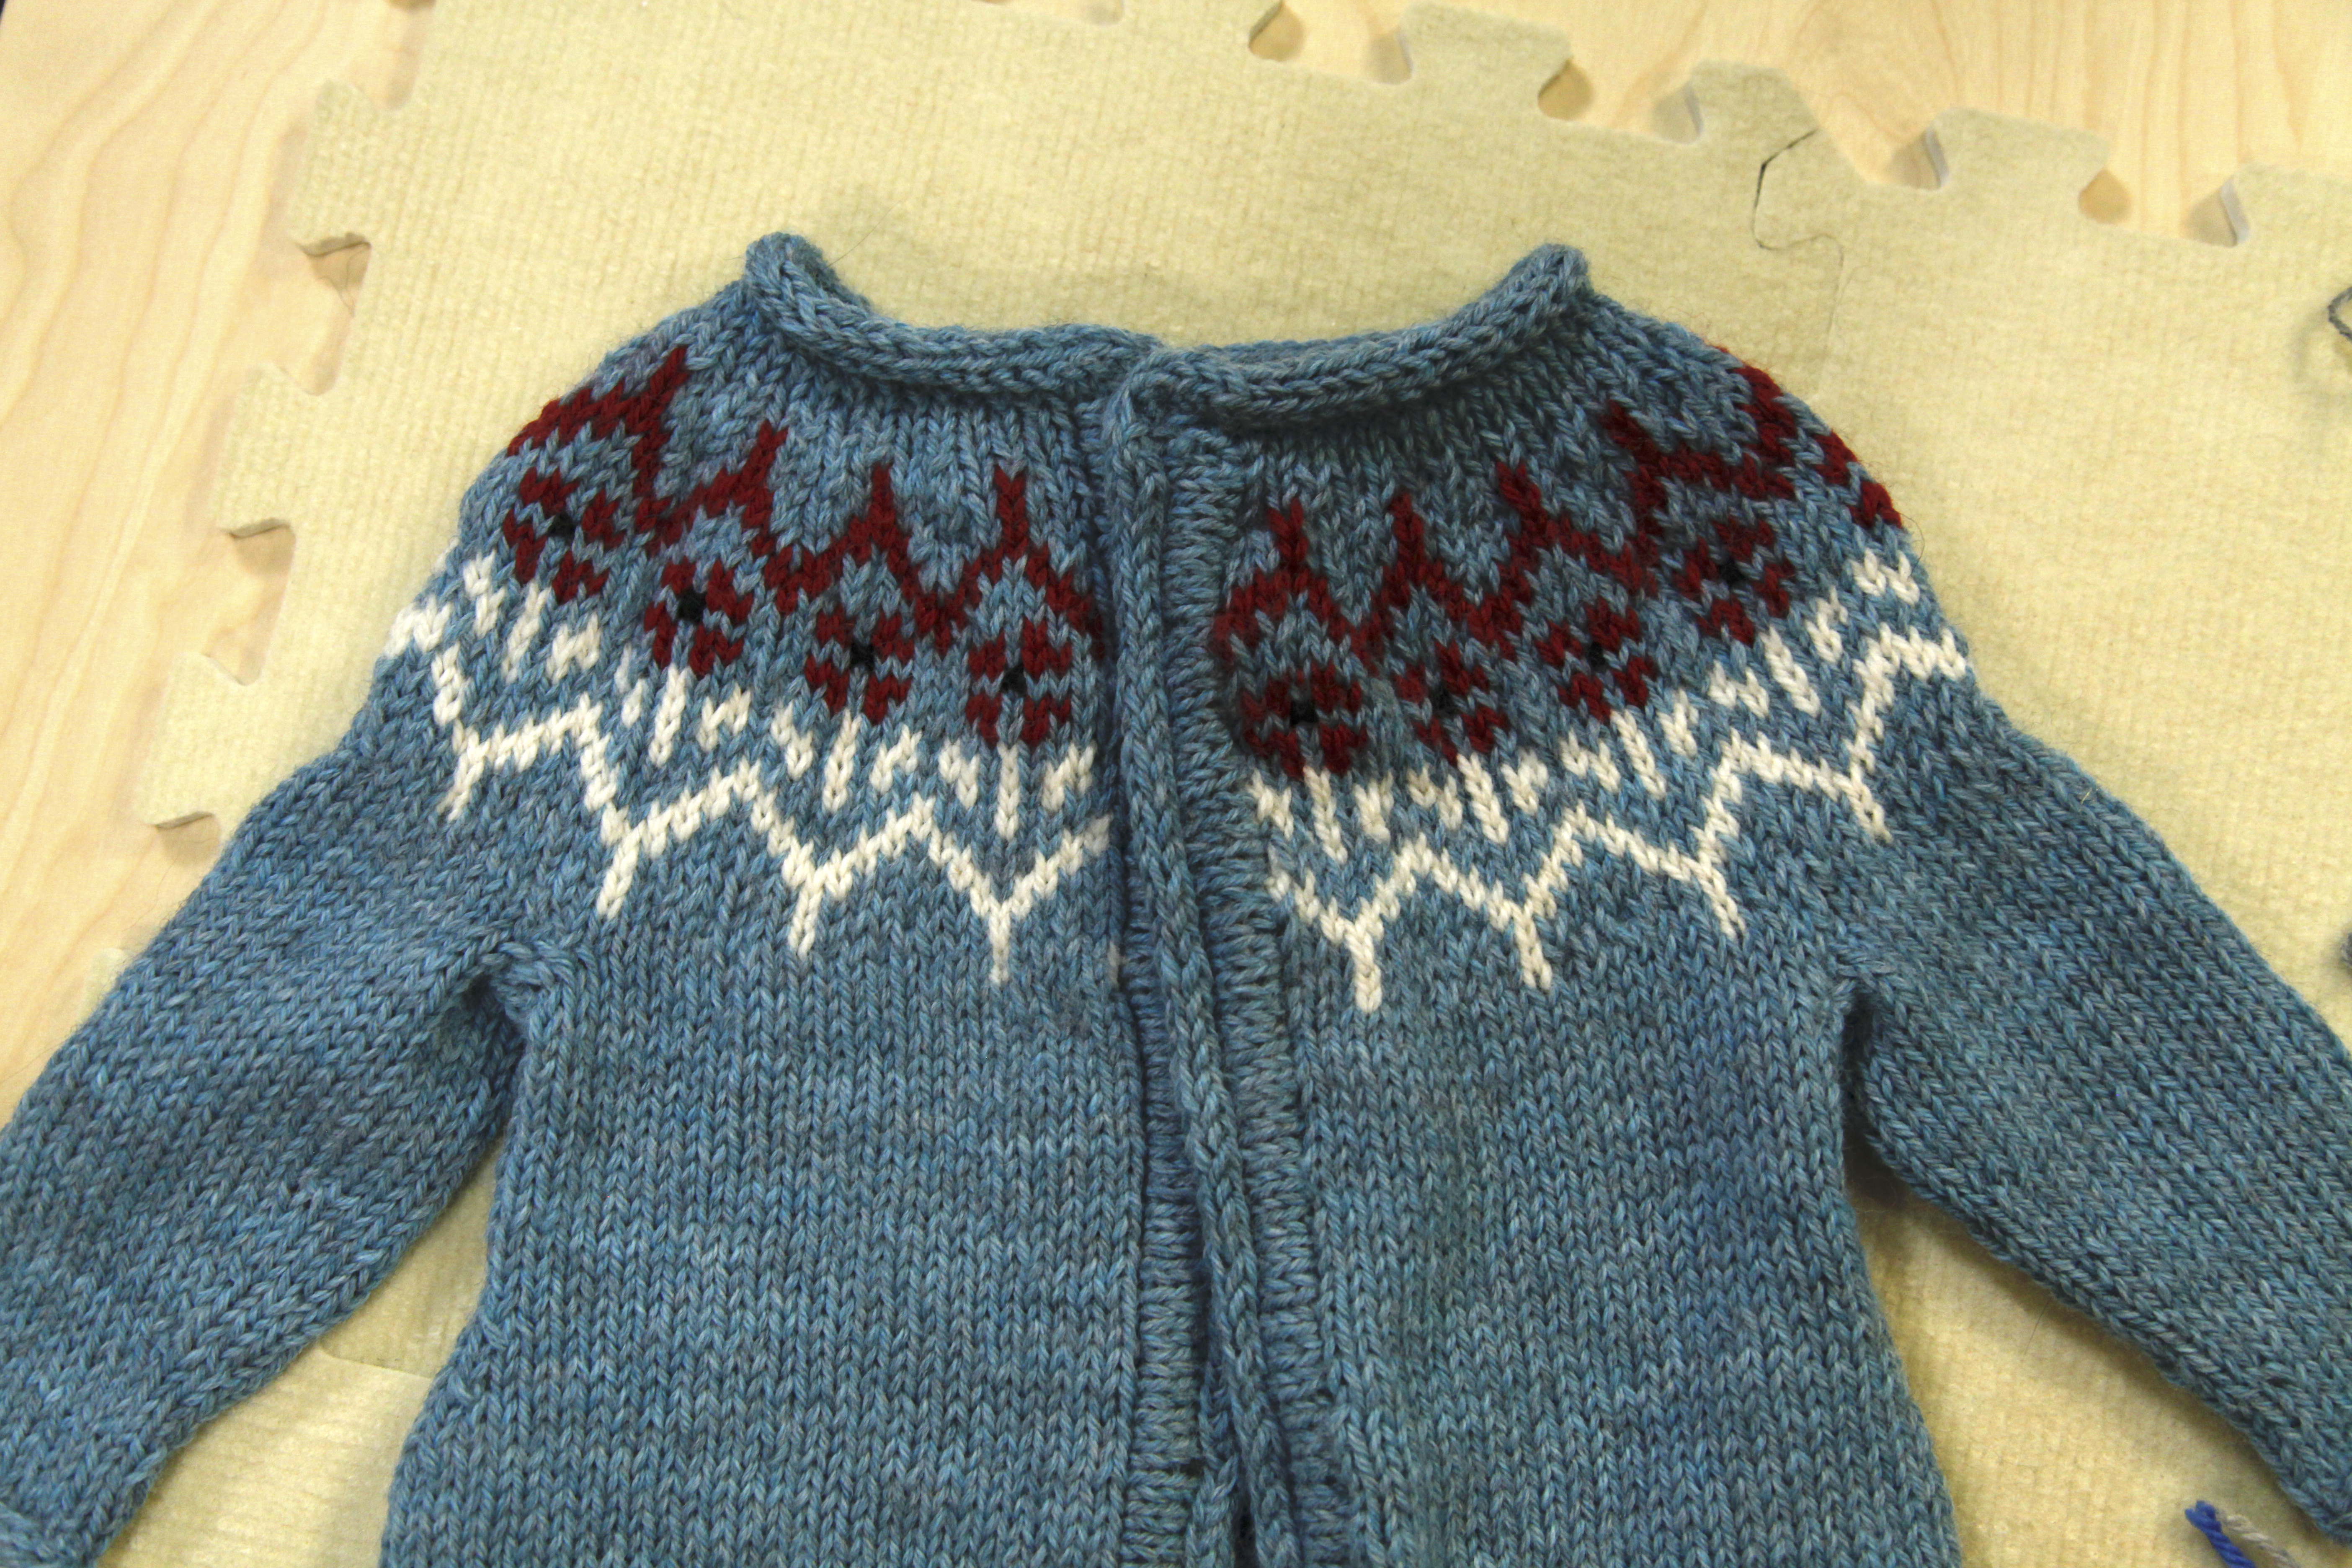 Blocking a blue yoke knitted sweater on tan mats